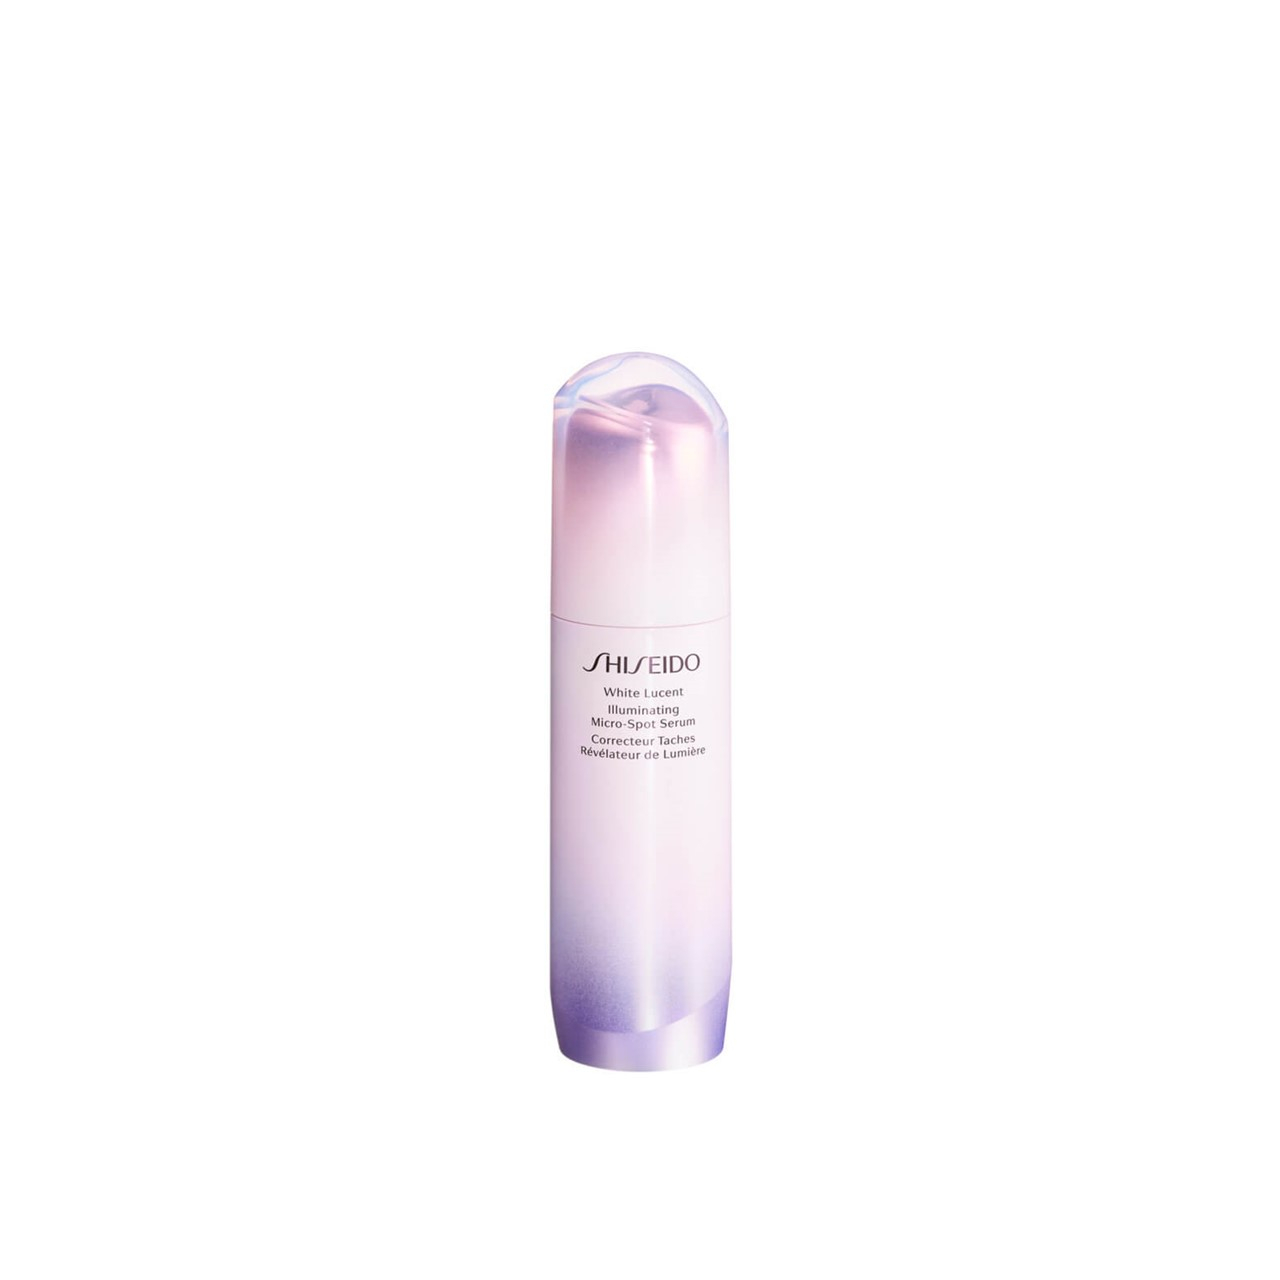 Shiseido White Lucent Illuminating Micro-Spot Serum 50ml (1.69fl oz)